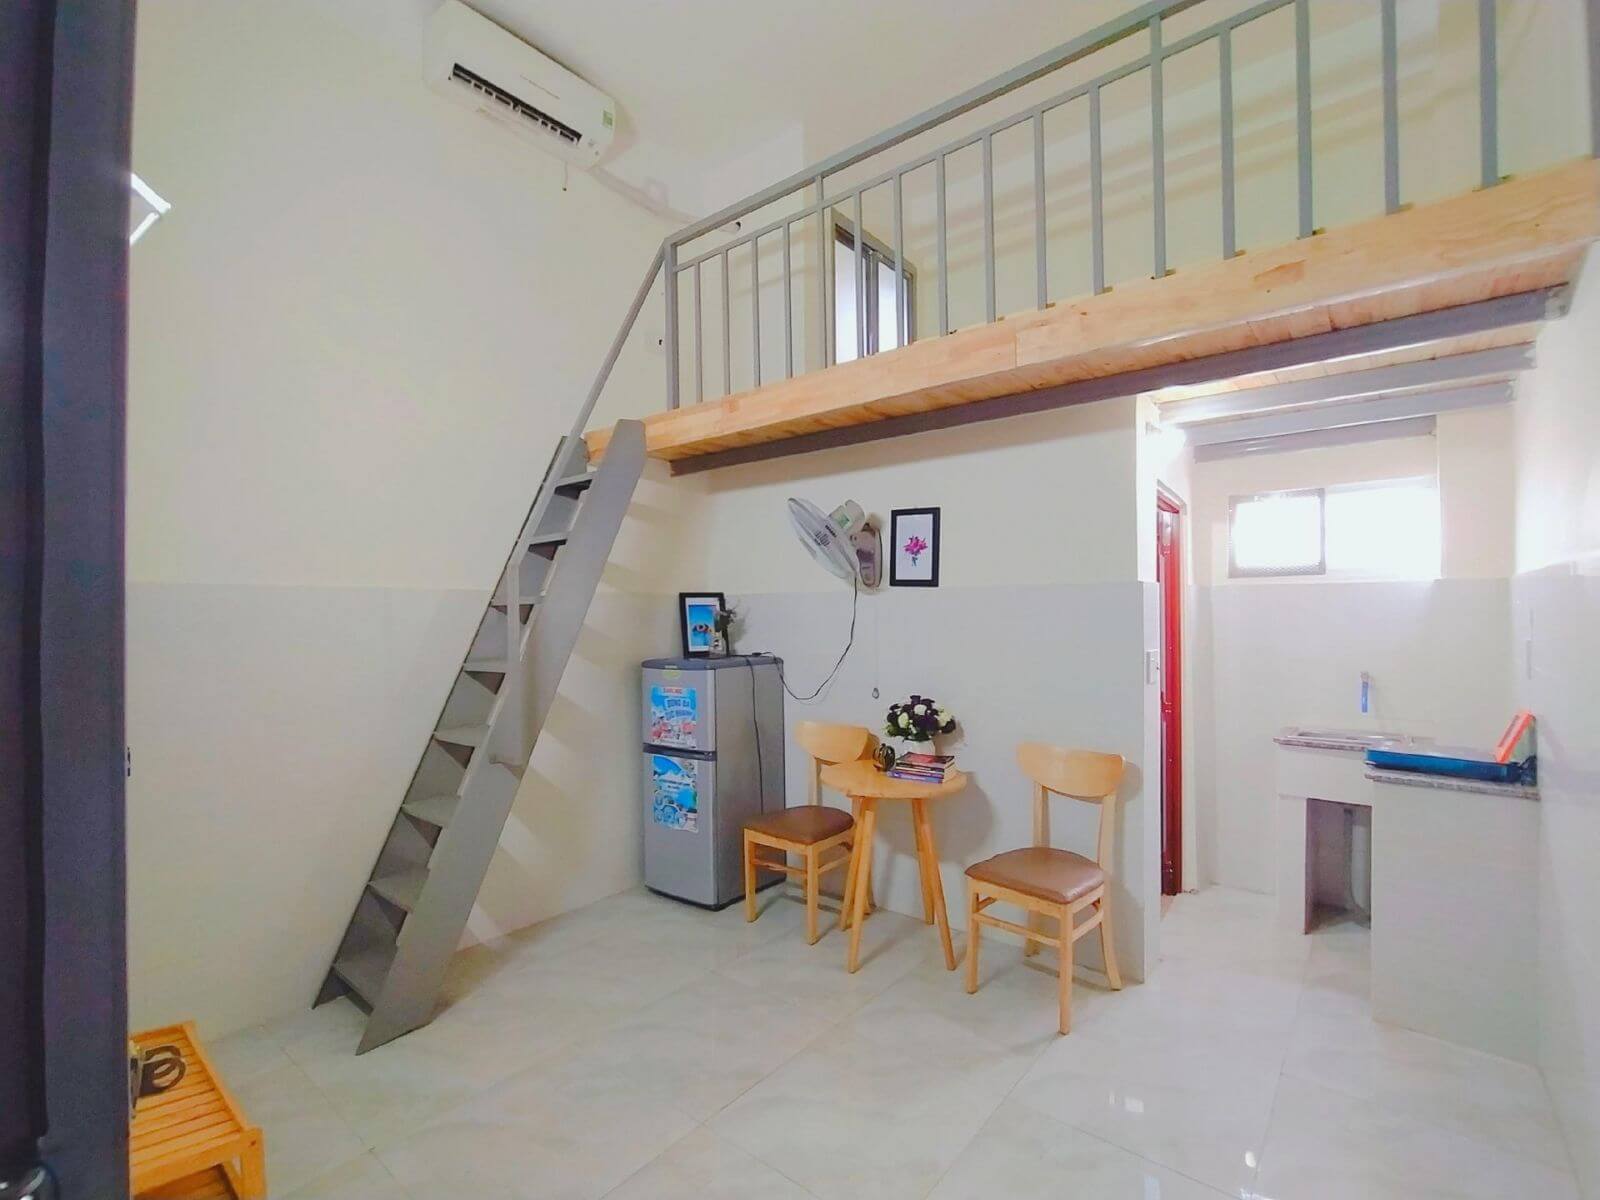 Nhà Xinh VTT cho thuê nhà mini house Cần Thơ  với giá tốt nhất thị trường